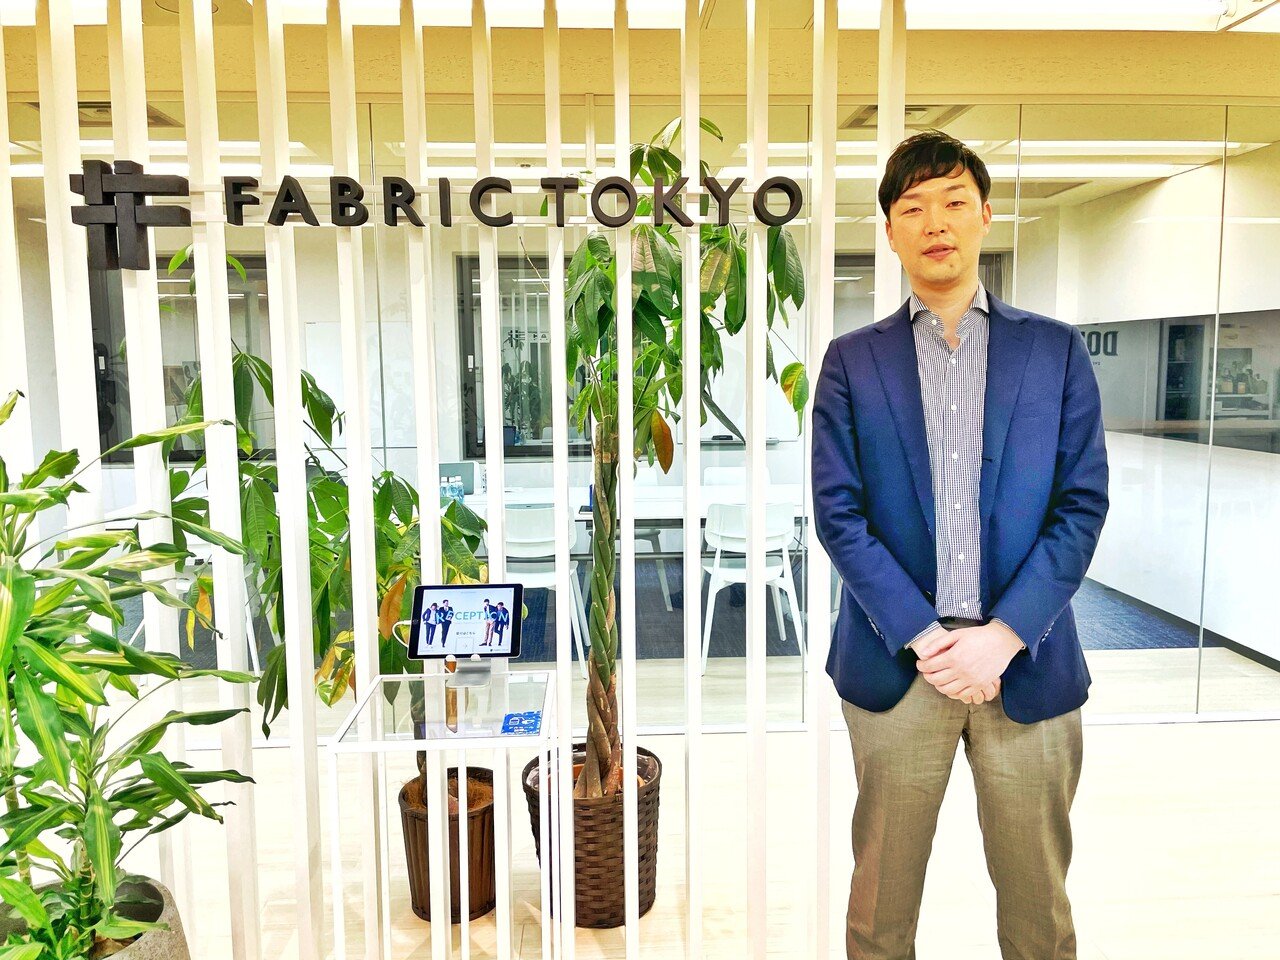 年商10億円のオーダースーツD2Cブランド「FABRIC TOKYO」の成長の裏側